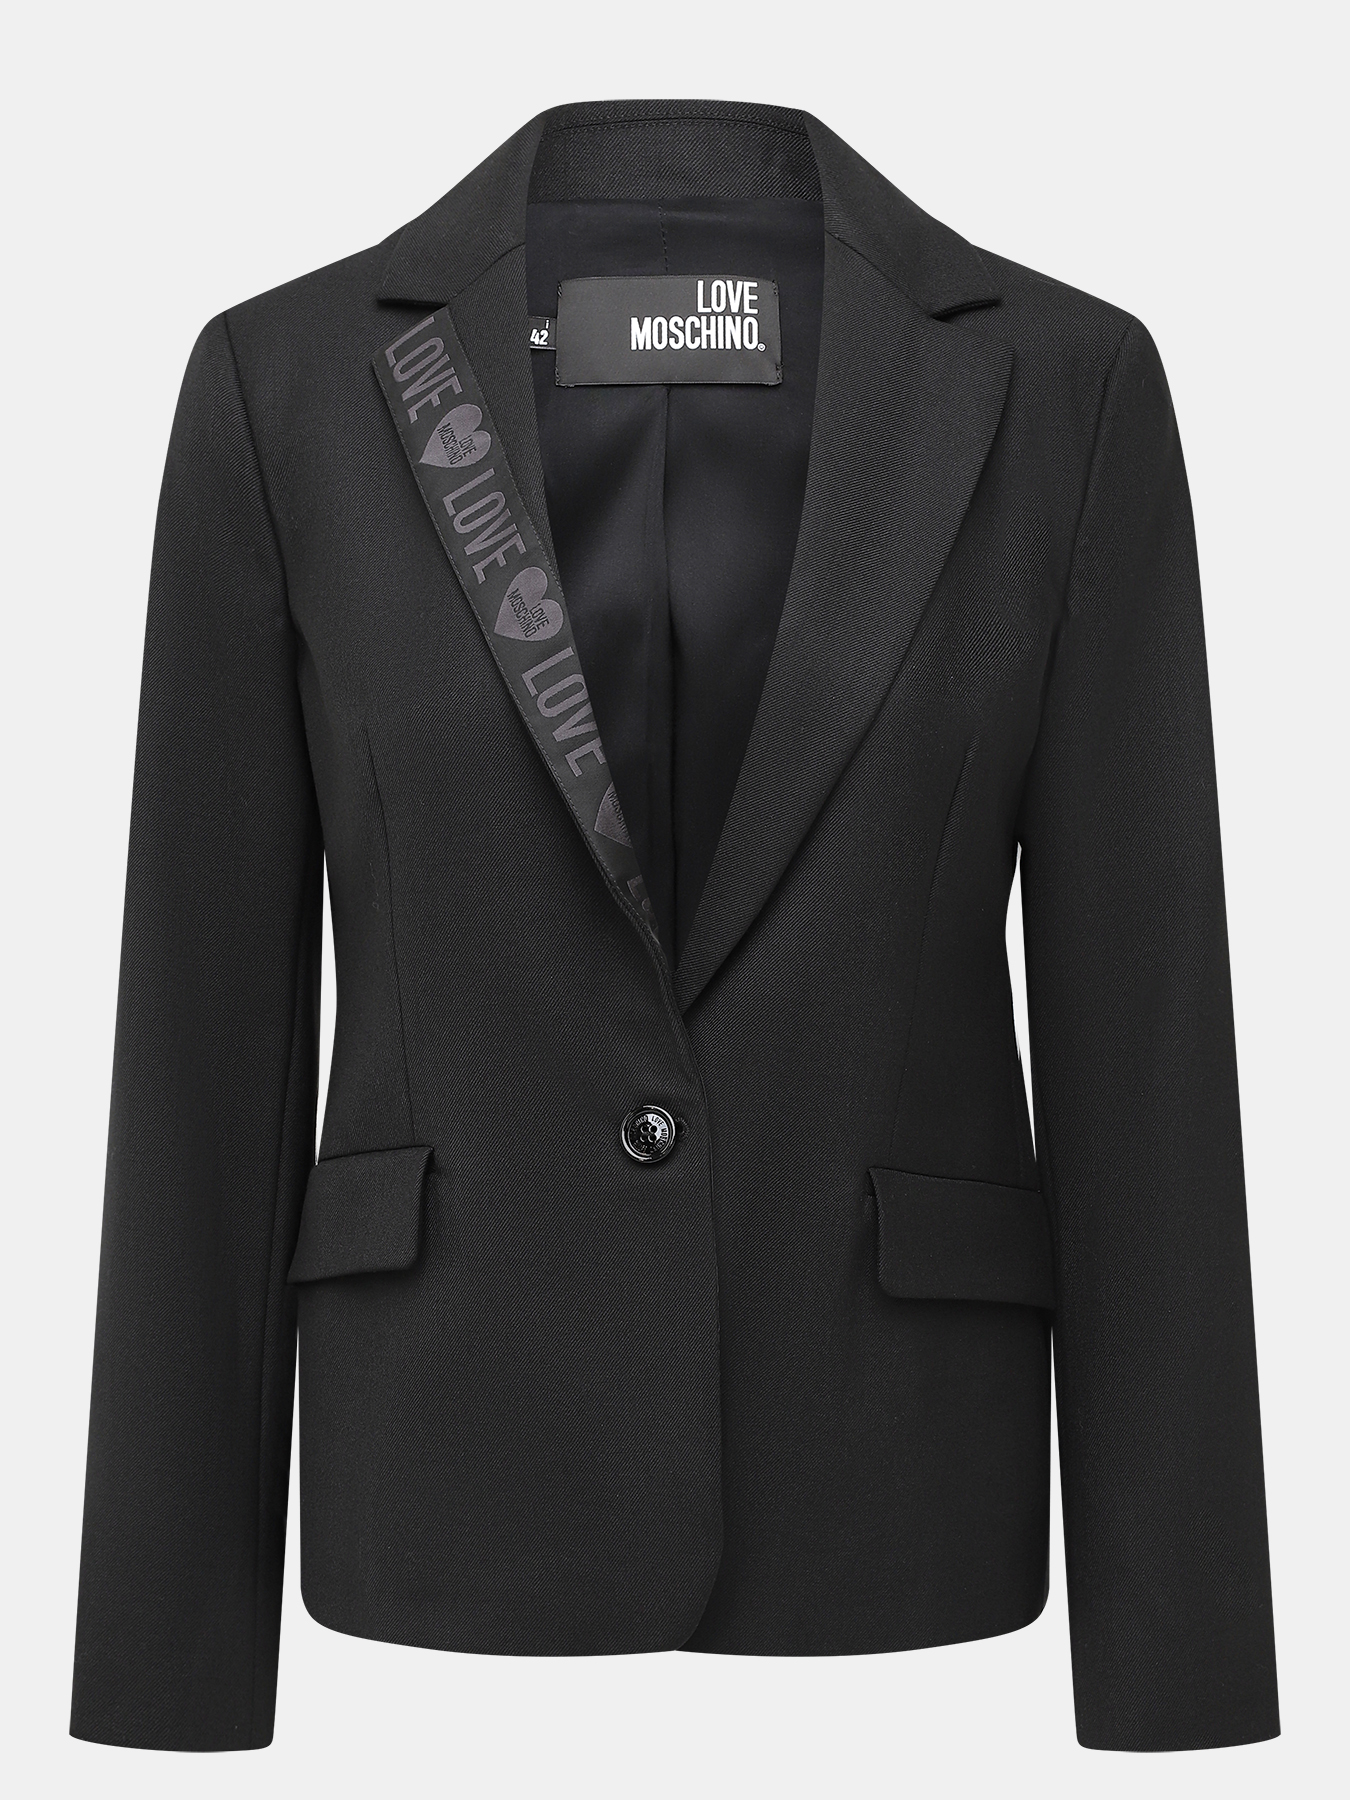 Пиджак Love Moschino 394601-021, цвет черный, размер 42